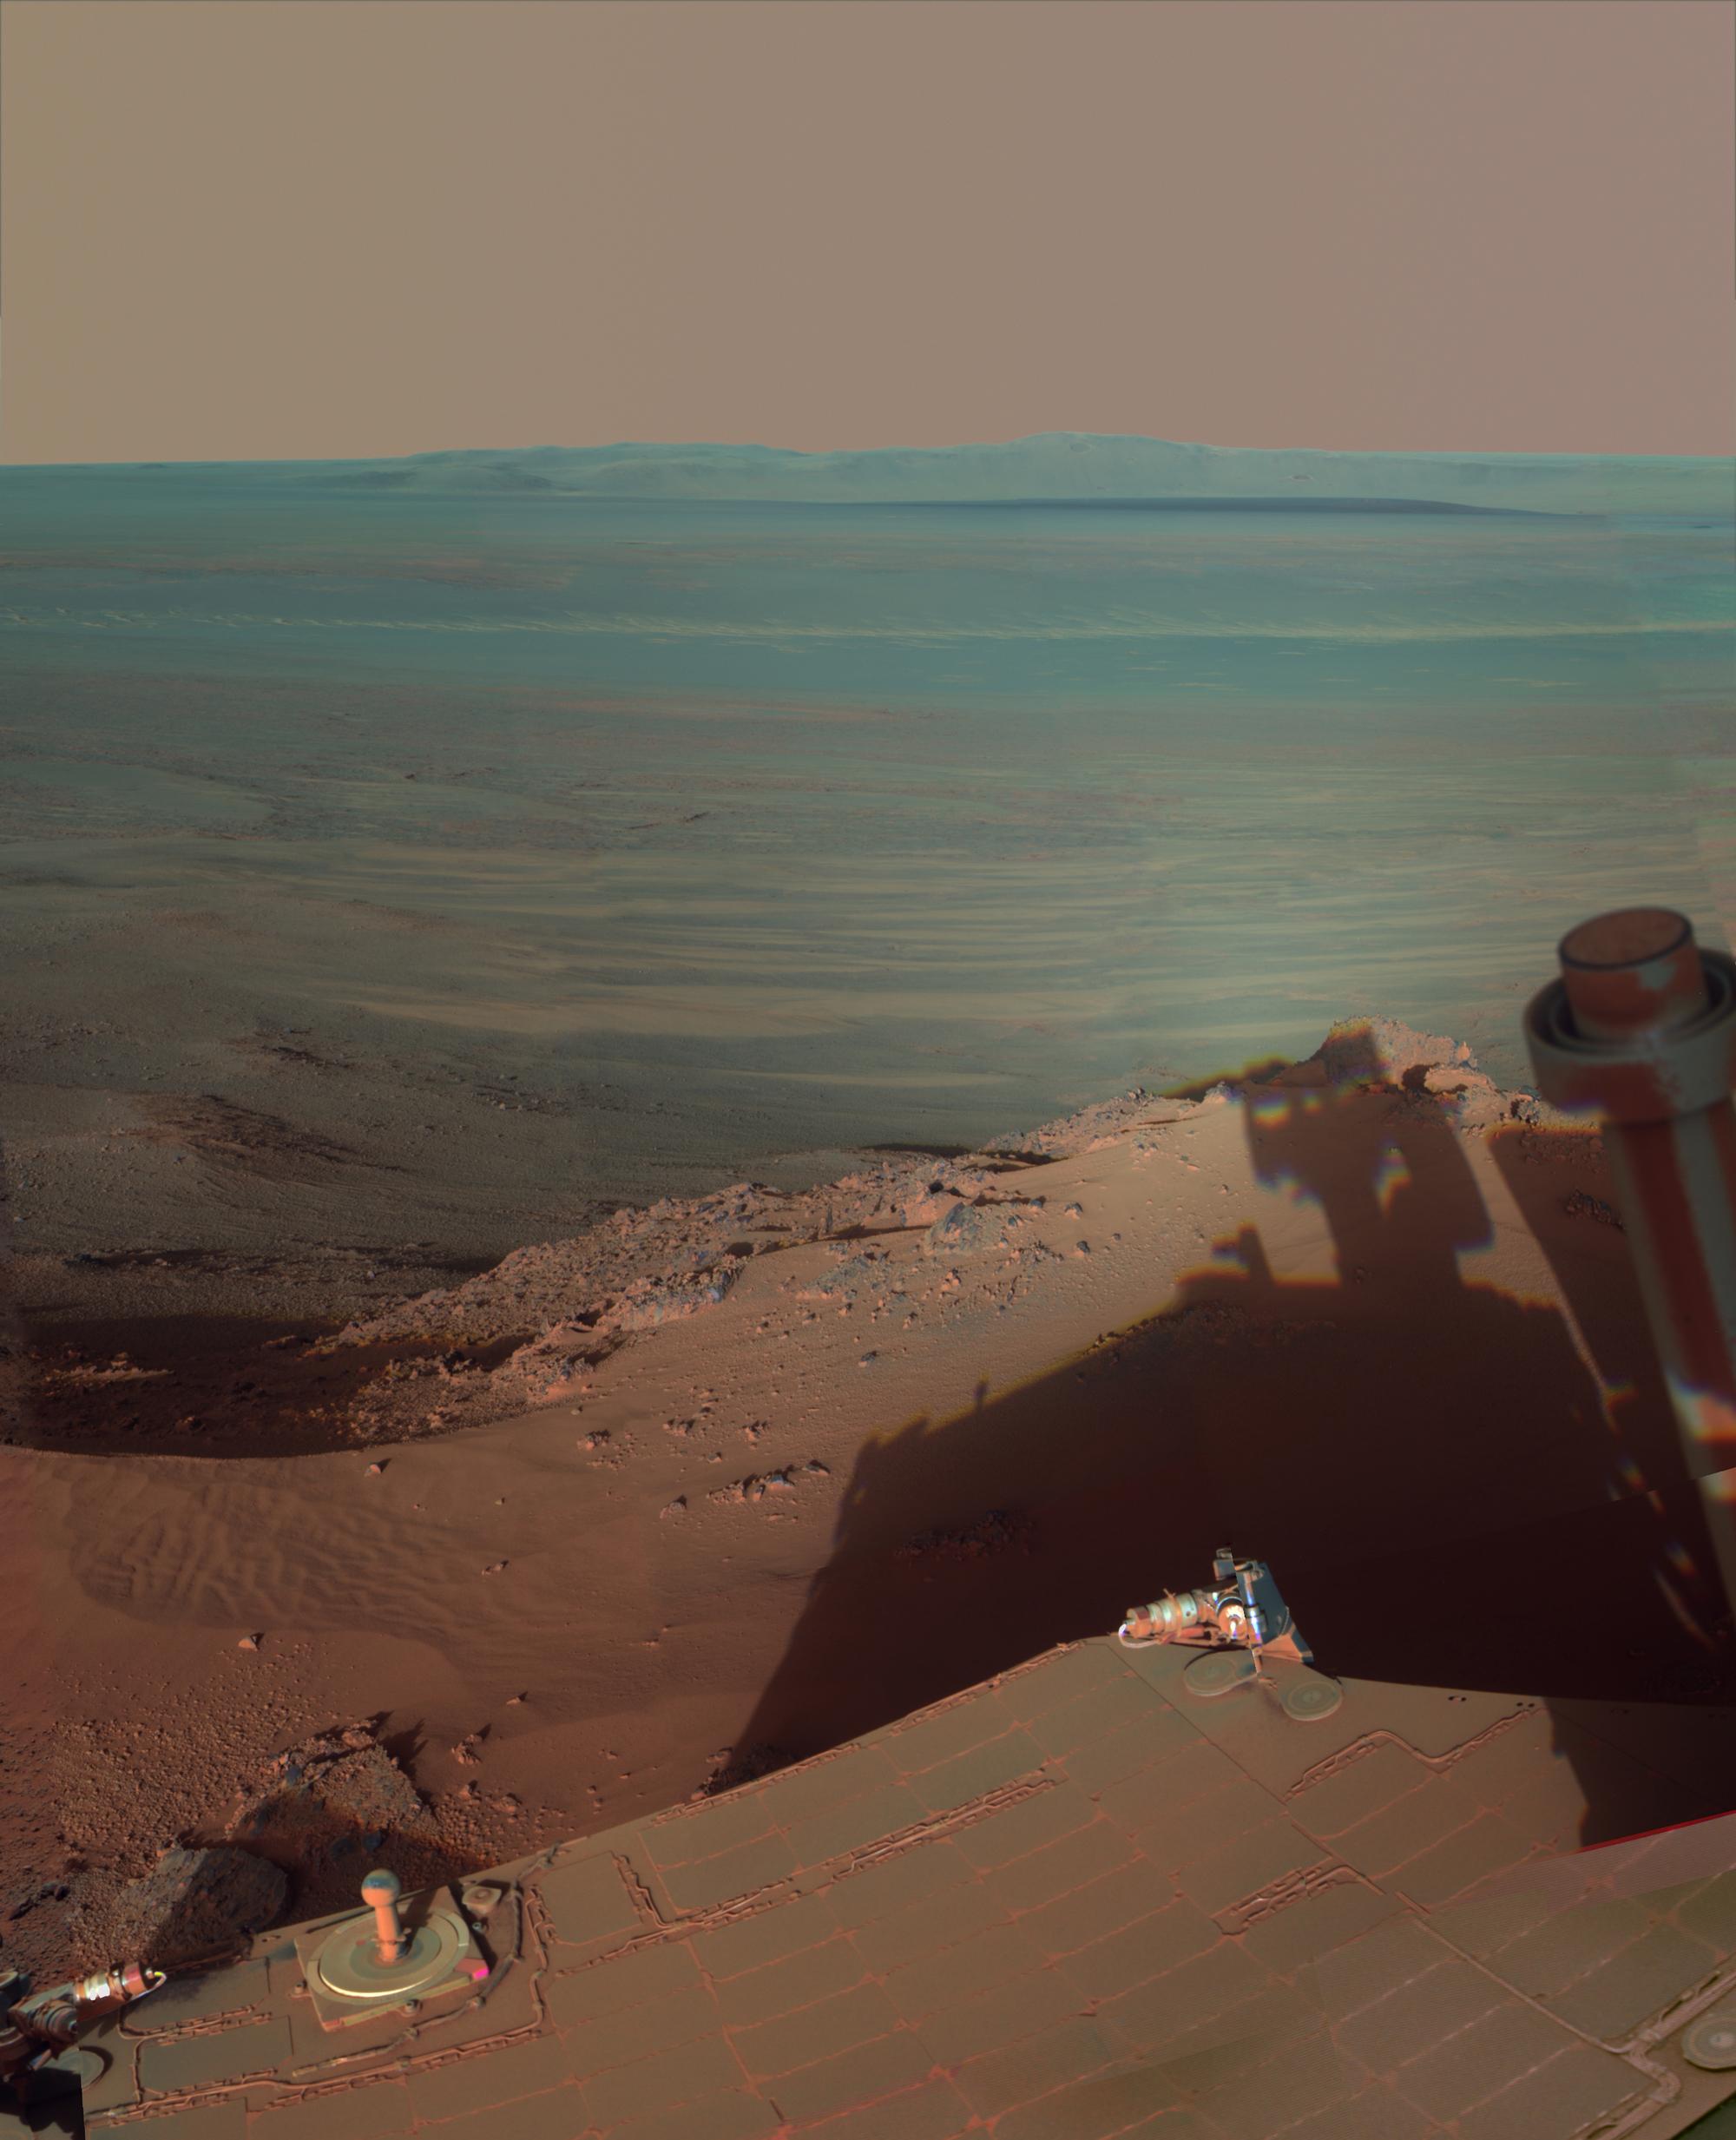 Una mirada al cráter Endeavour en Marte